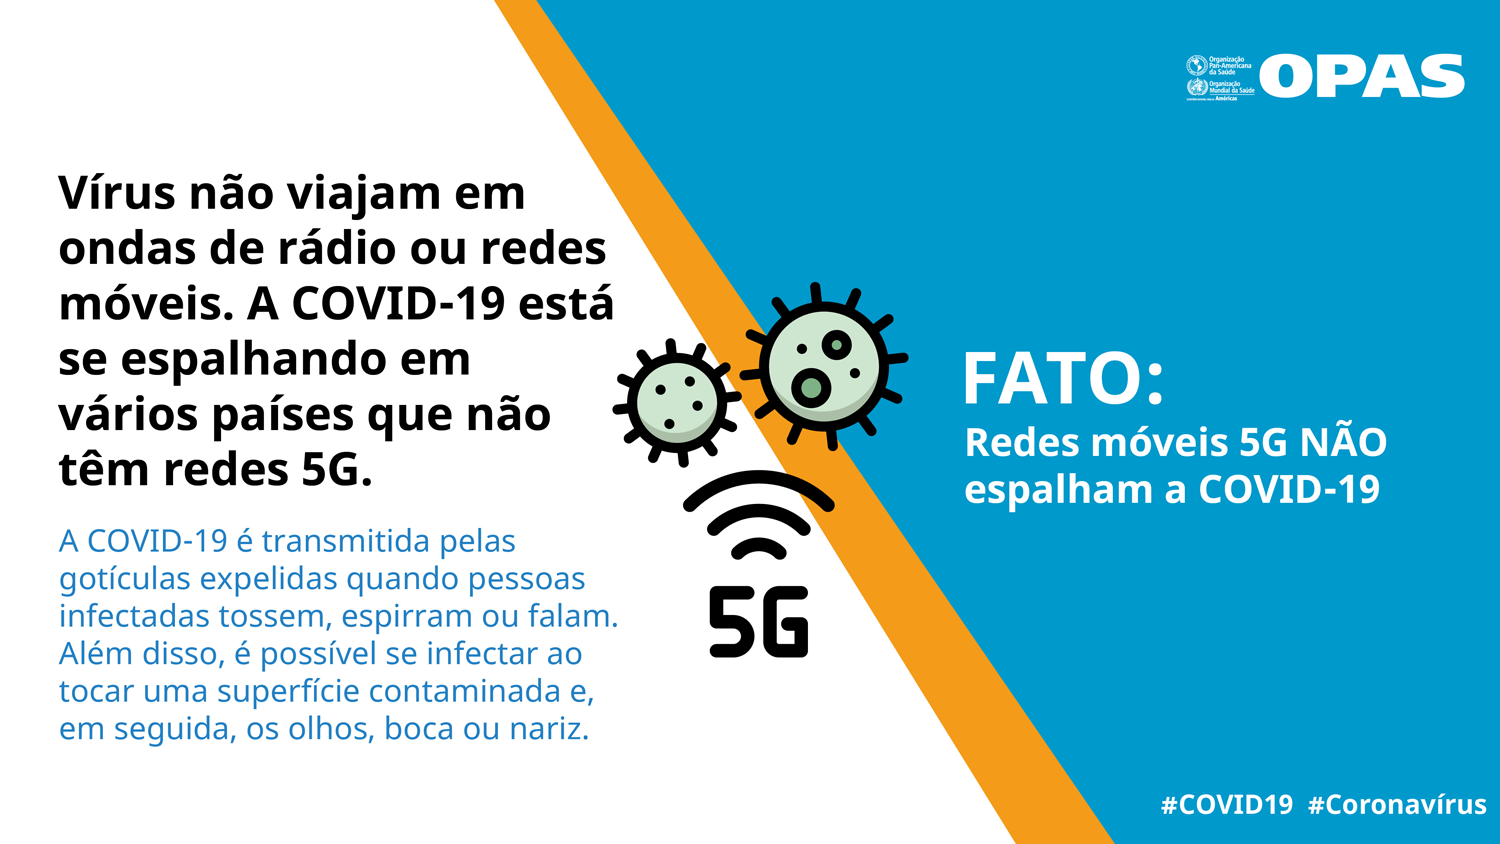 FATO: Redes móveis 5G NÃO espalham a COVID-19